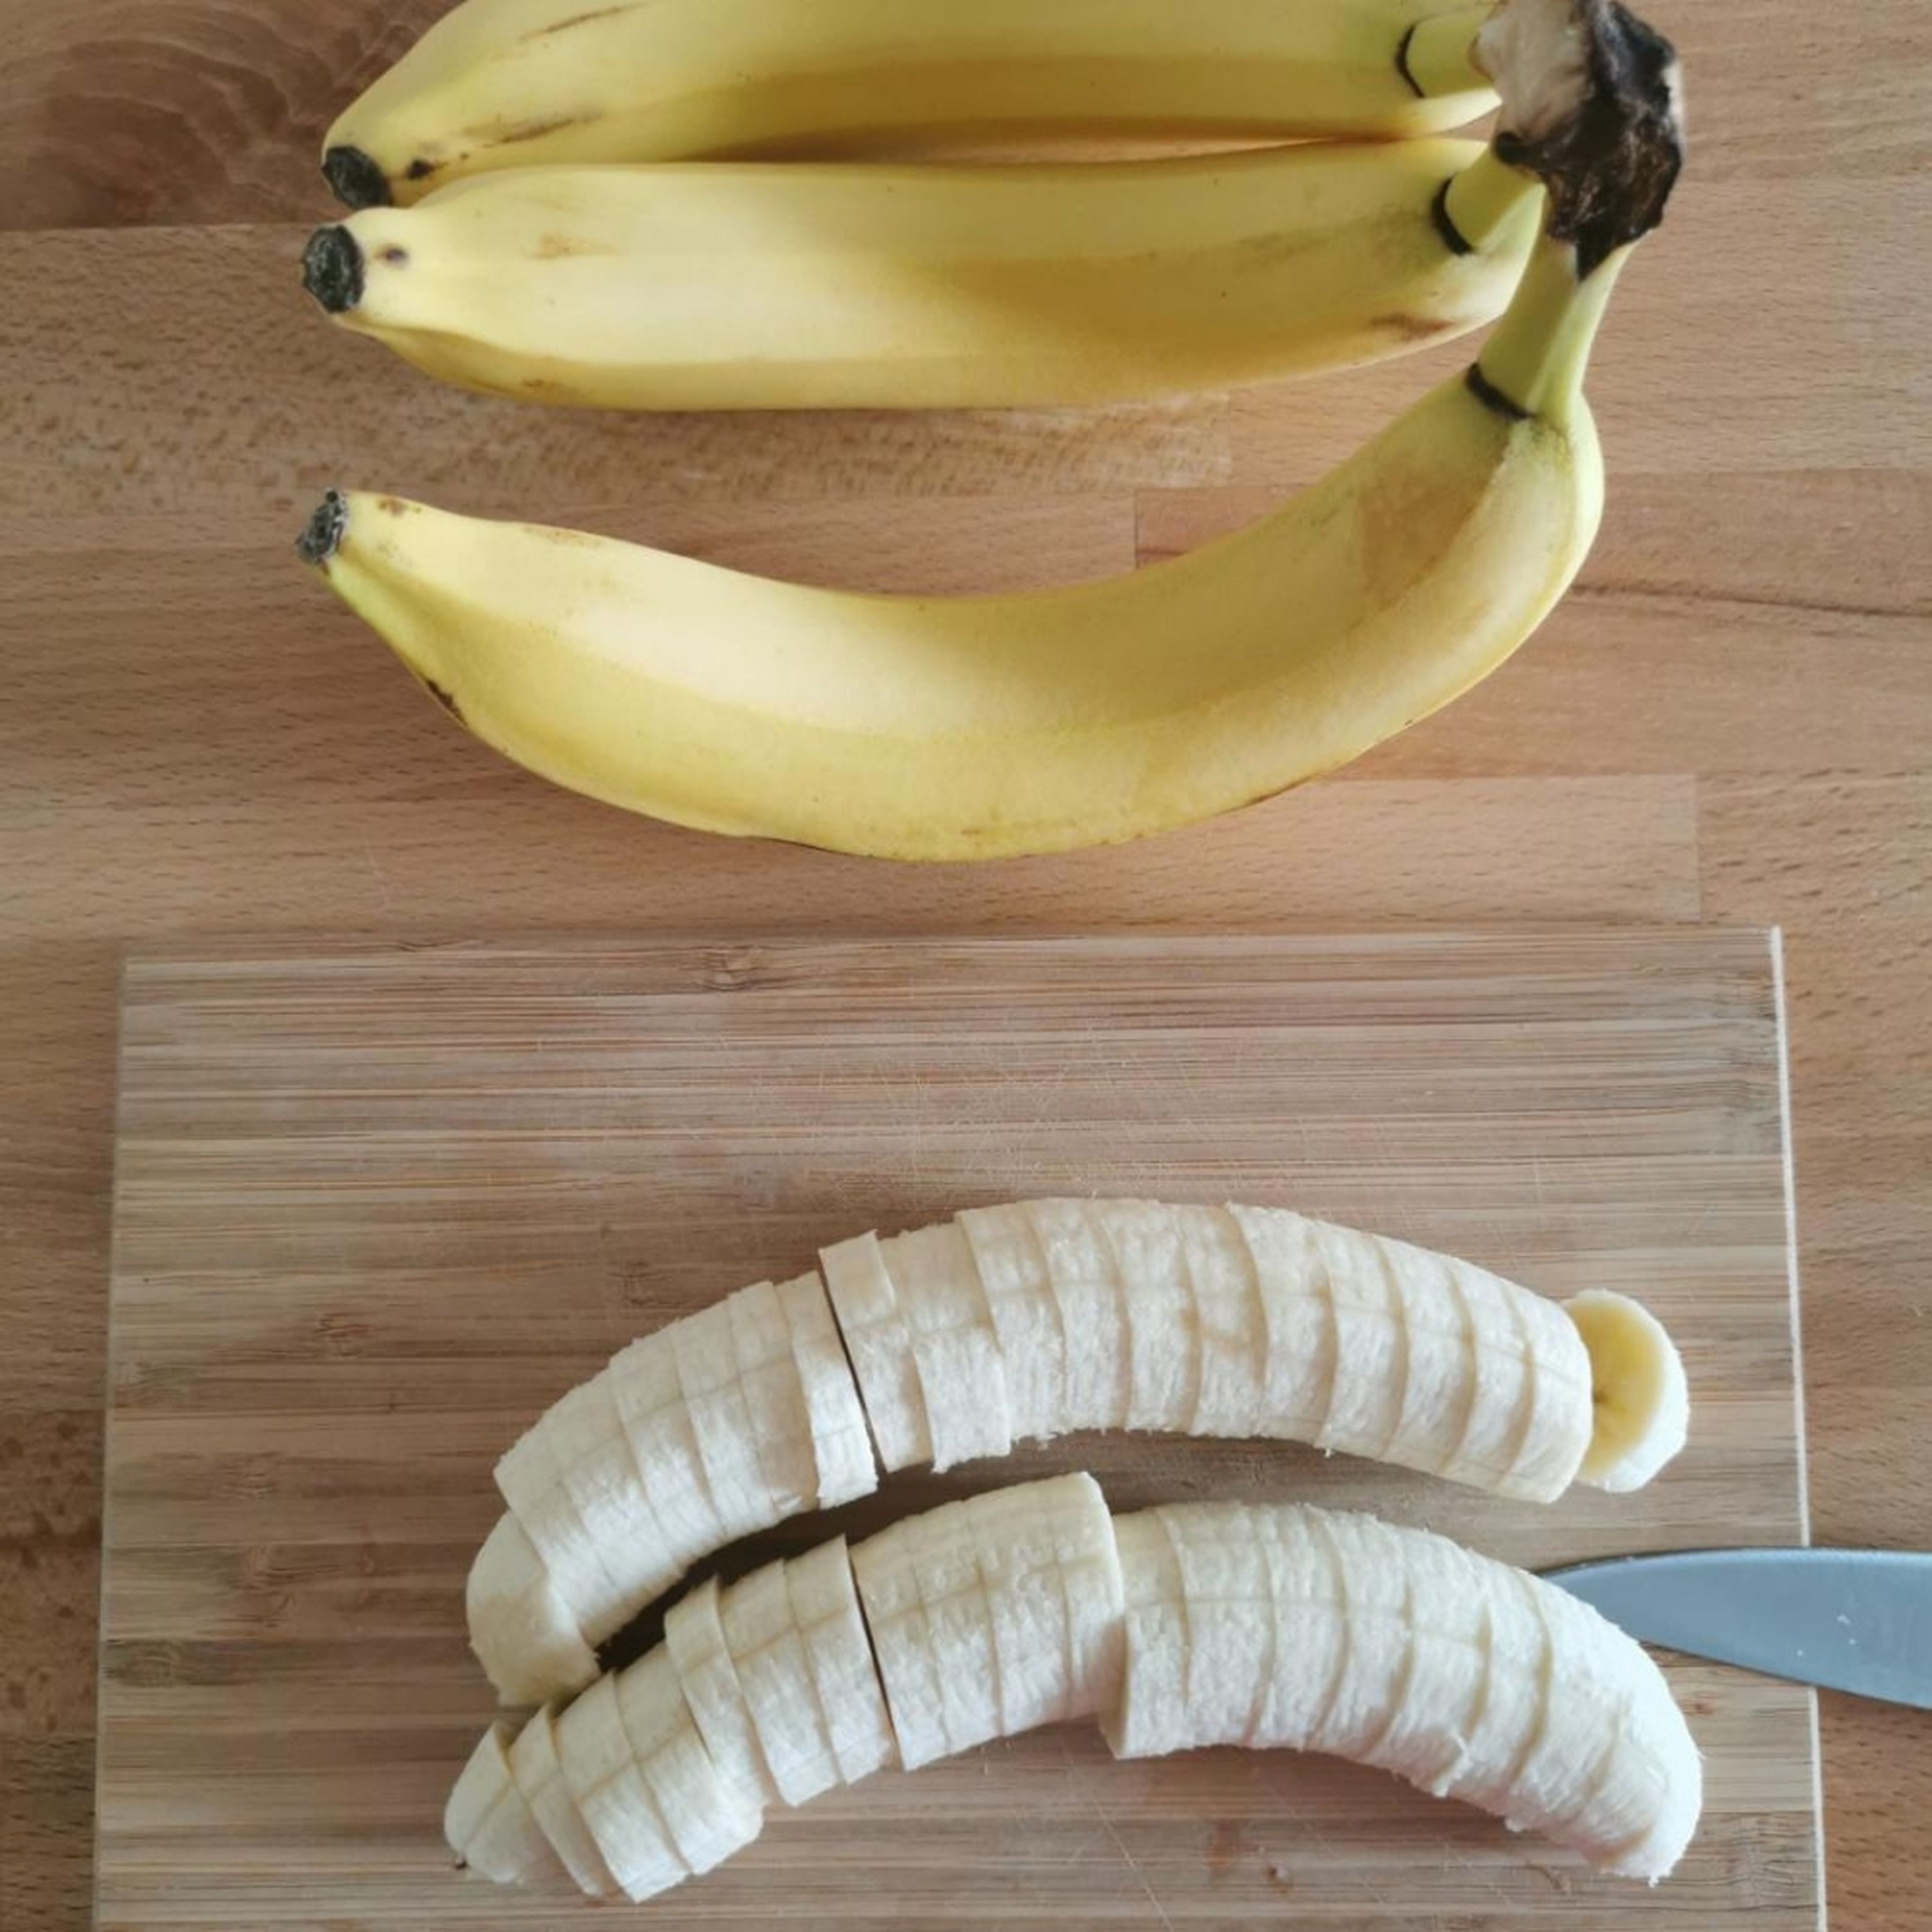 Für die Nice Cream Basis muss du als erstes 2 Bananen in Scheiben schneiden und sie anschließend in einem Gefrierbeutel/einer Box in die Tiefkühltruhe für ein paar Stunden legen. Am besten du nimmst sehr reife Bananen, die machen es zum Schluss besonders süß! Ideal auch einfach über Nacht in das Tiefkühlfach.